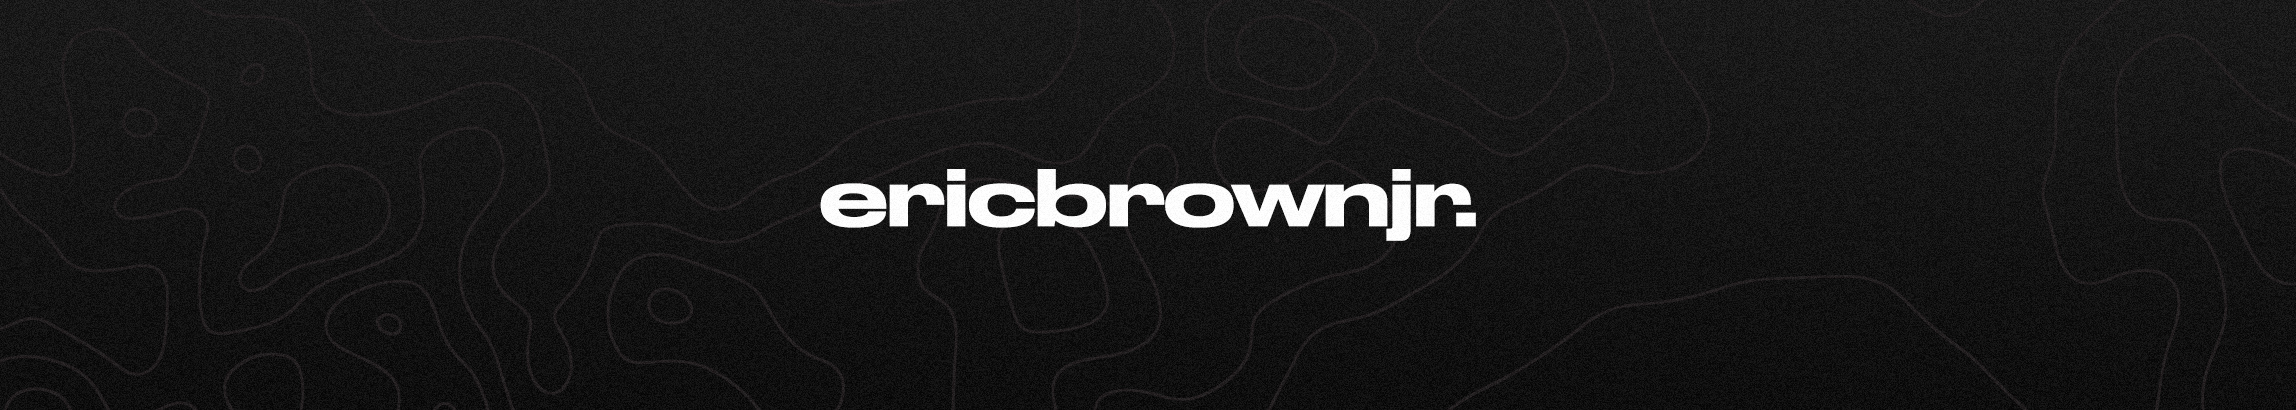 Eric Brown Jr. のプロファイルバナー